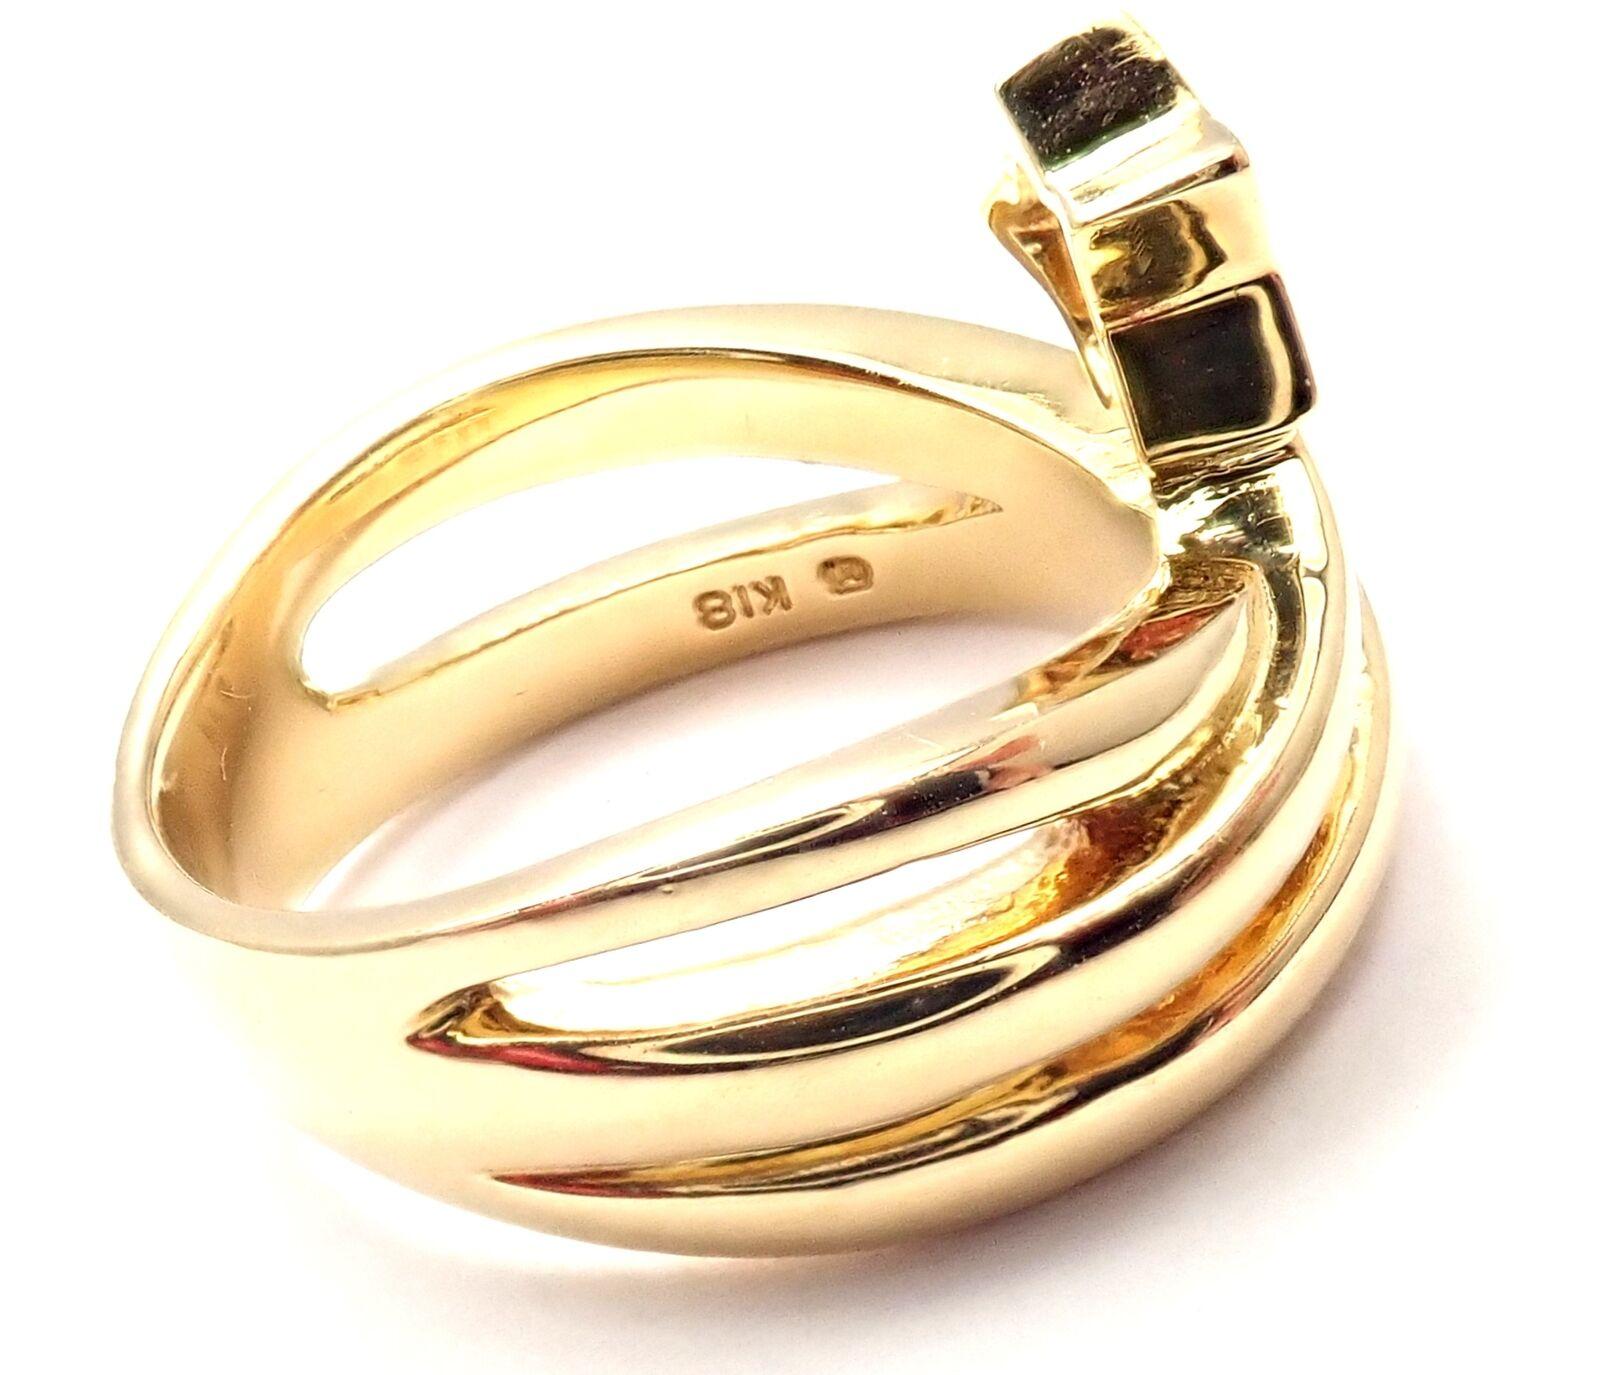 anneau porte-bonheur en or jaune 18k avec diamants, signé Mikimoto. 
Avec 1 diamant rond de taille brillante, pureté VS1, couleur E, poids total d'environ 0,05ct
Détails : 
Taille de l'anneau : 5
Poids : 8,5 grammes
Largeur : 12mm
Poinçons